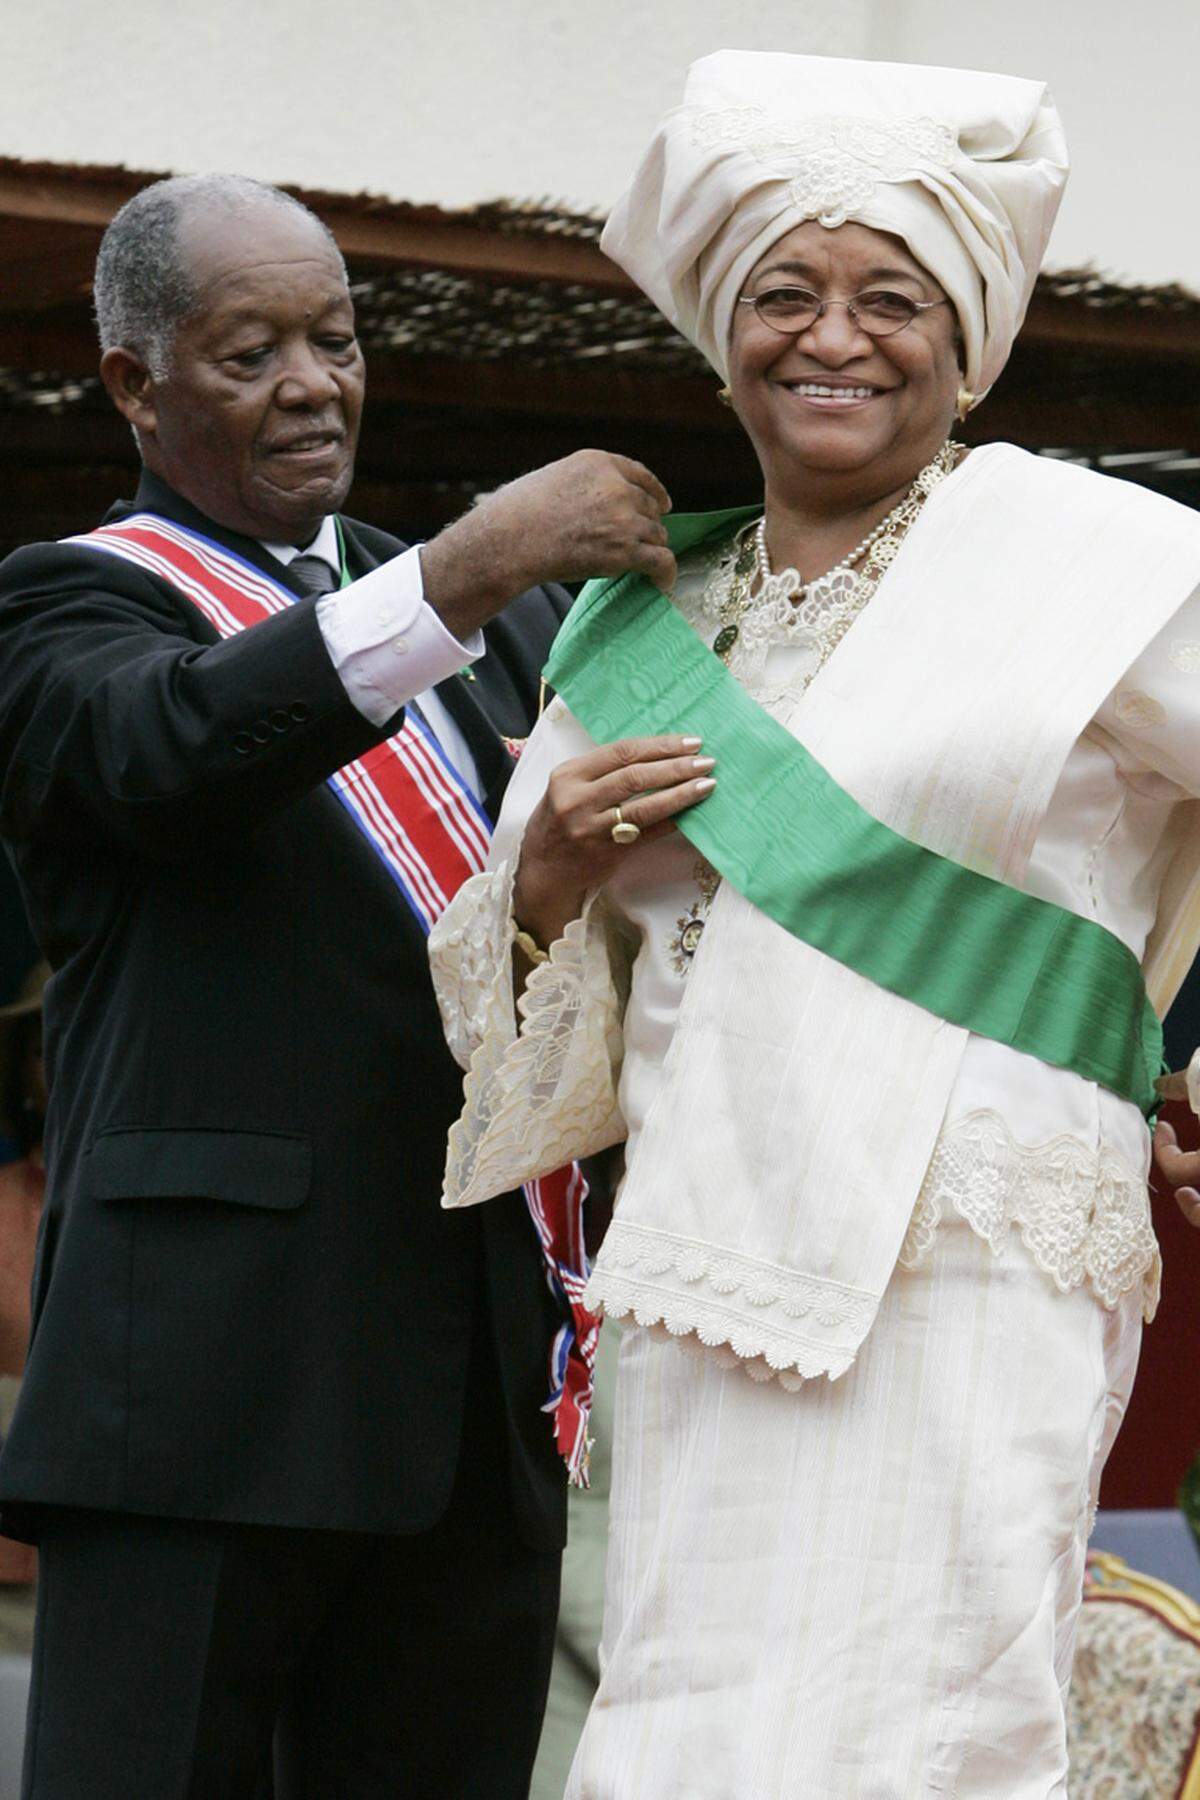 Johnson-Sirleaf hat eine atemberaubende Karriere hinter sich: Die 72-jährige Liberianerin hat in Harvard studiert und erklomm anschließend Schritt für Schritt die Karriereleiter - unter anderem bei den Vereinten Nationen und der Weltbank. Sie gehört zu den wenigen Frauen in Afrika, die in der Politik schon vor Jahrzehnten eine Rolle spielten. Sie war Kabinettsmitglied der liberianischen Regierung, die 1980 im Putsch von Samuel Doe gestürzt wurde. Später wurde Johnson-Sirleaf wegen Landesverrats verurteilt und ihr Haus geplündert, schließlich ging sie ins Exil. Vor fünf Jahren kam dann mit dem Sieg bei der liberianischen Präsidentenwahl der Höhepunkt ihrer politischen Karriere. "Dies öffnet die Tür für Frauen auf dem gesamten Kontinent", sagte Johnson-Sirleaf damals. "Und ich bin stolz darauf, dass ich diejenige bin, die die Tür öffnet." Obwohl sie als "Eiserne Lady" gilt - integer, unbeugsam und willensstark - war die Aufgabe, die sie dann erwartete, alles andere als einfach.